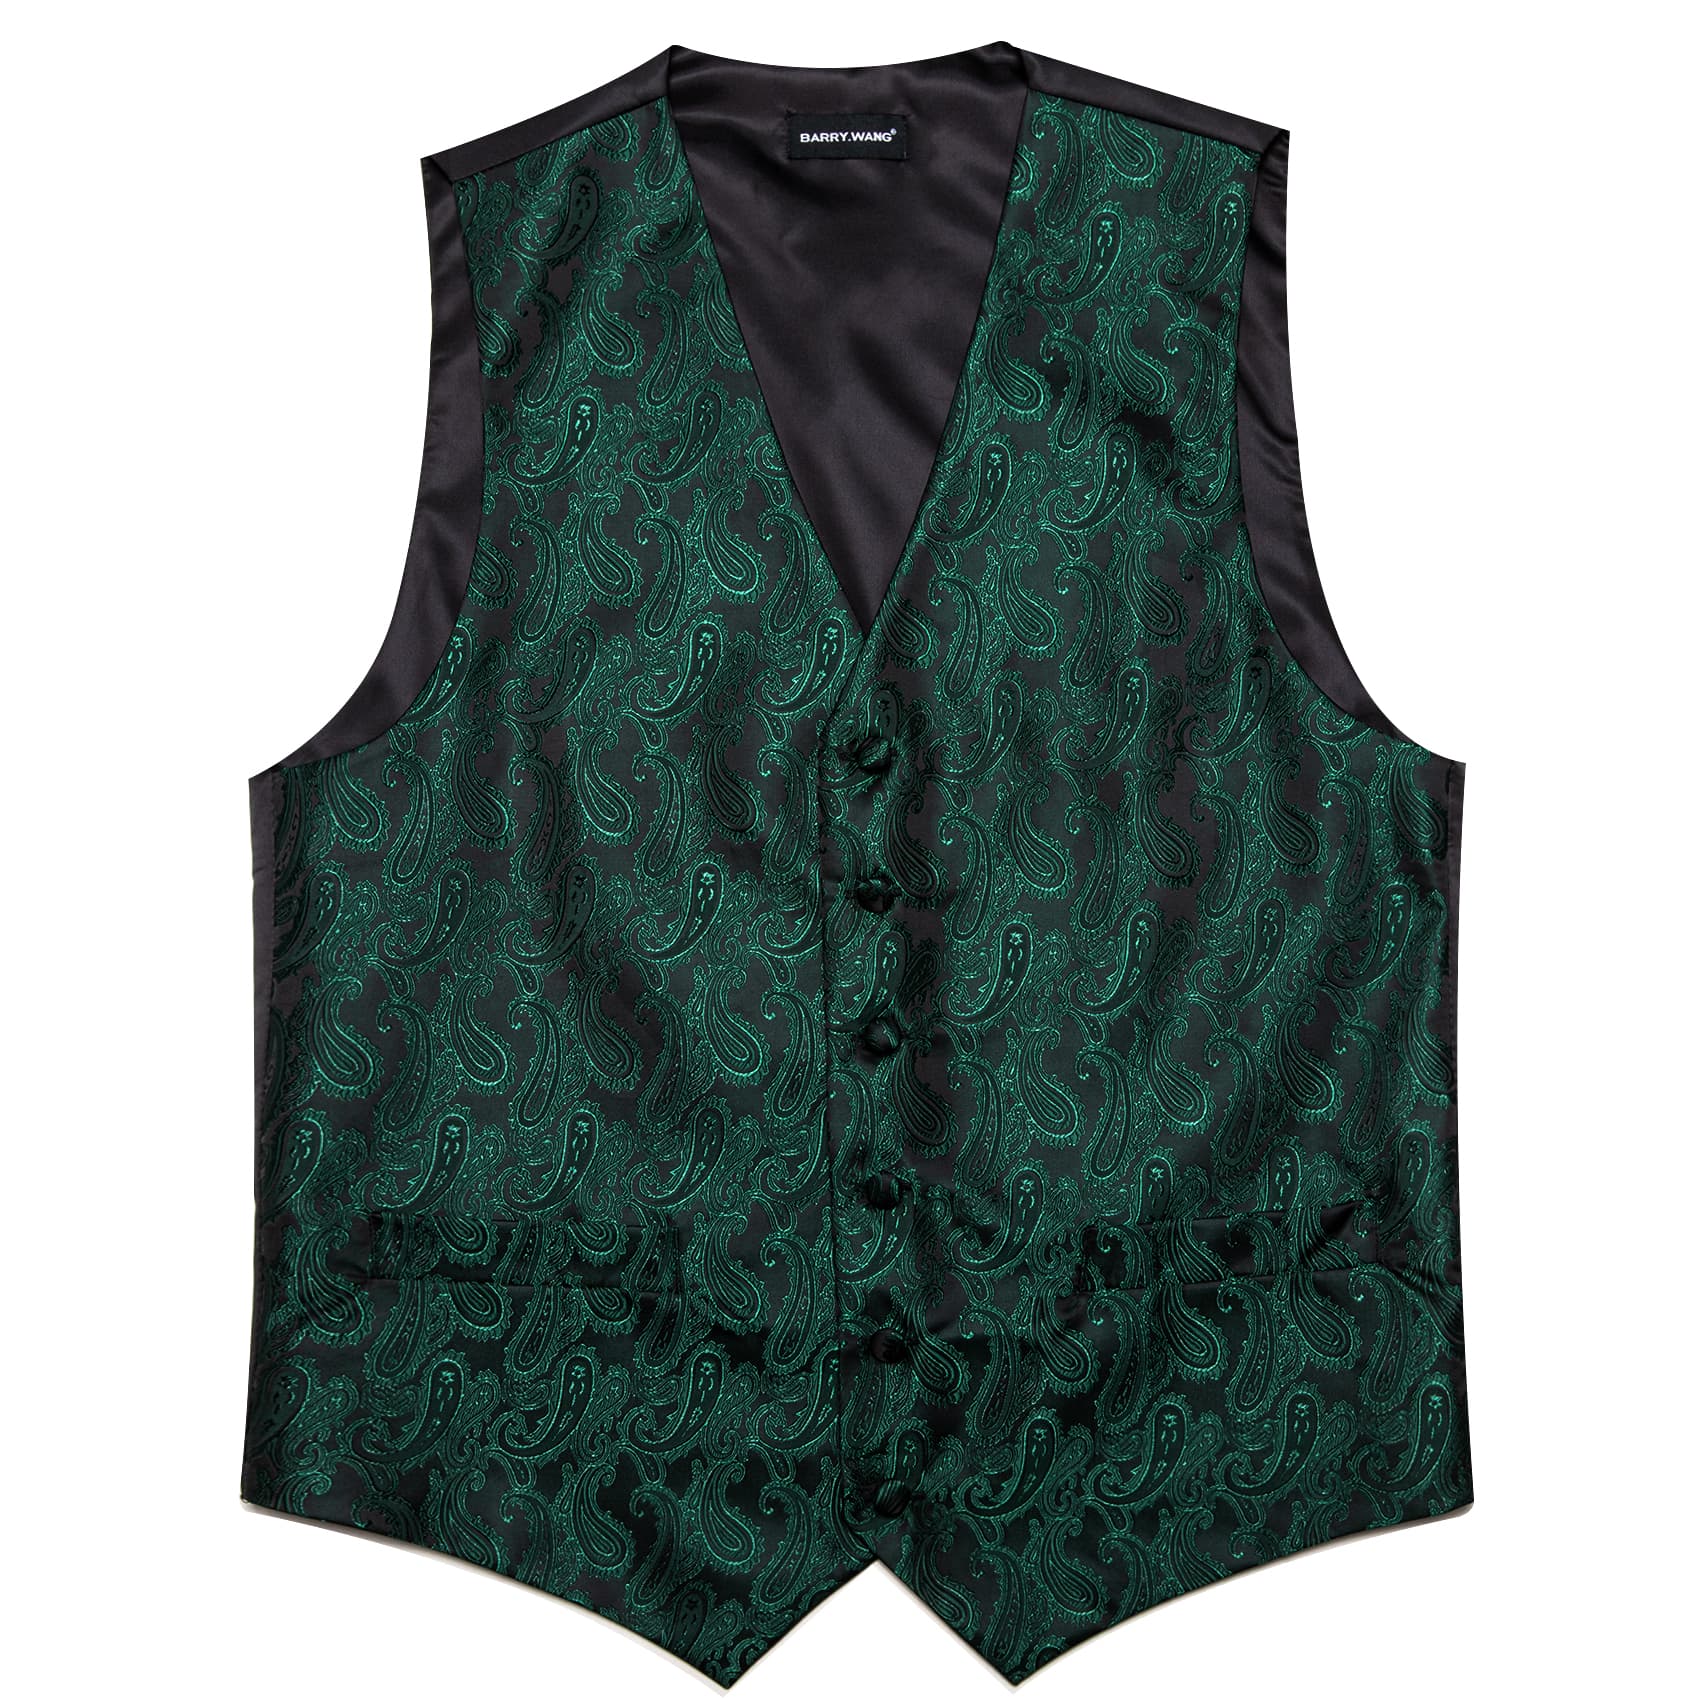 mens vest for wedding Dark Greemens vest for wedding Dark Green waistcoat for men black suit n waistcoat for men black suit 